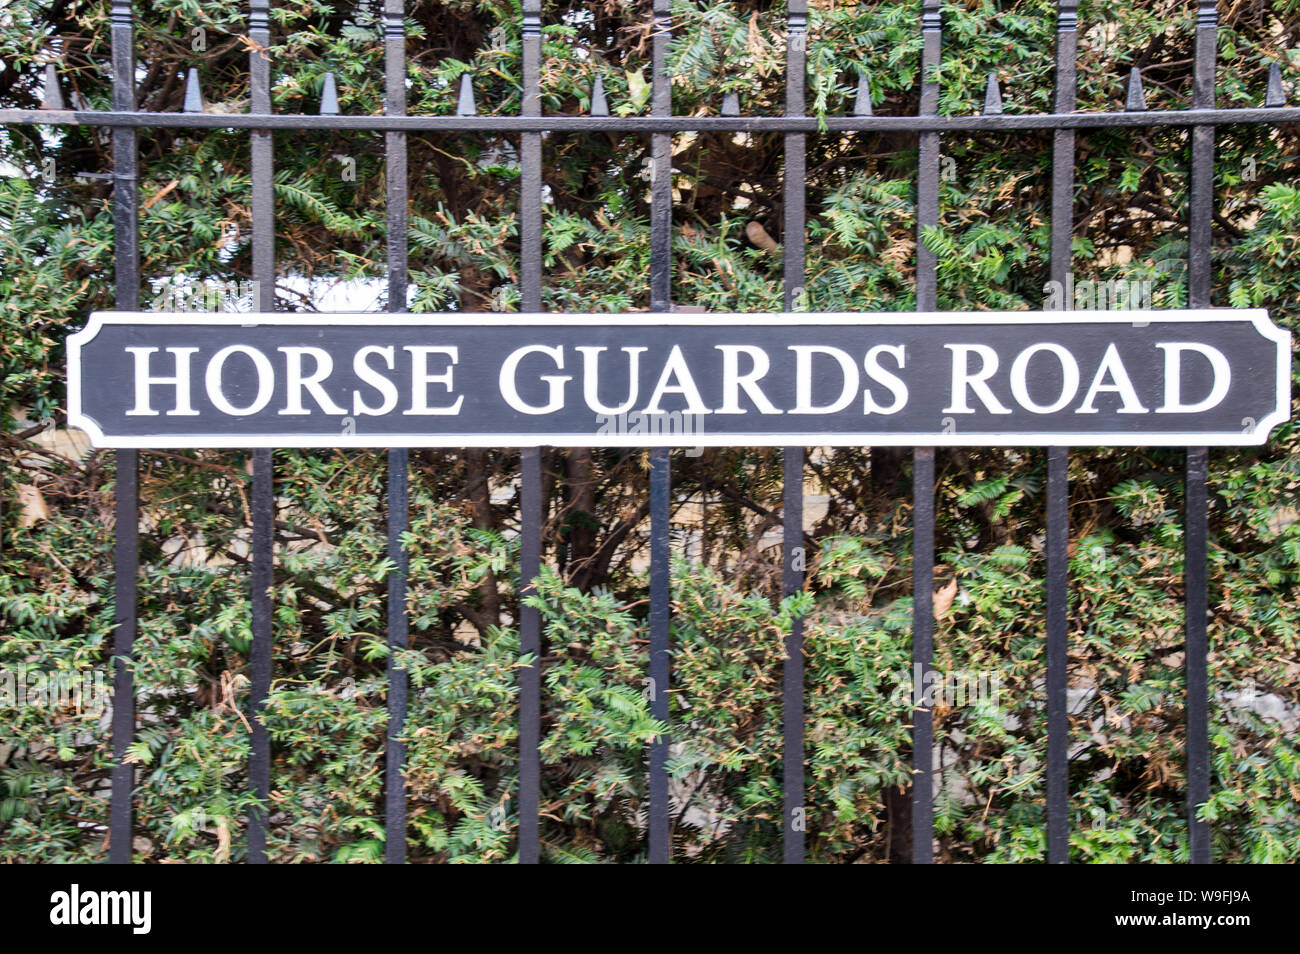 La placa con el nombre de la carretera de guardias a caballo Foto de stock